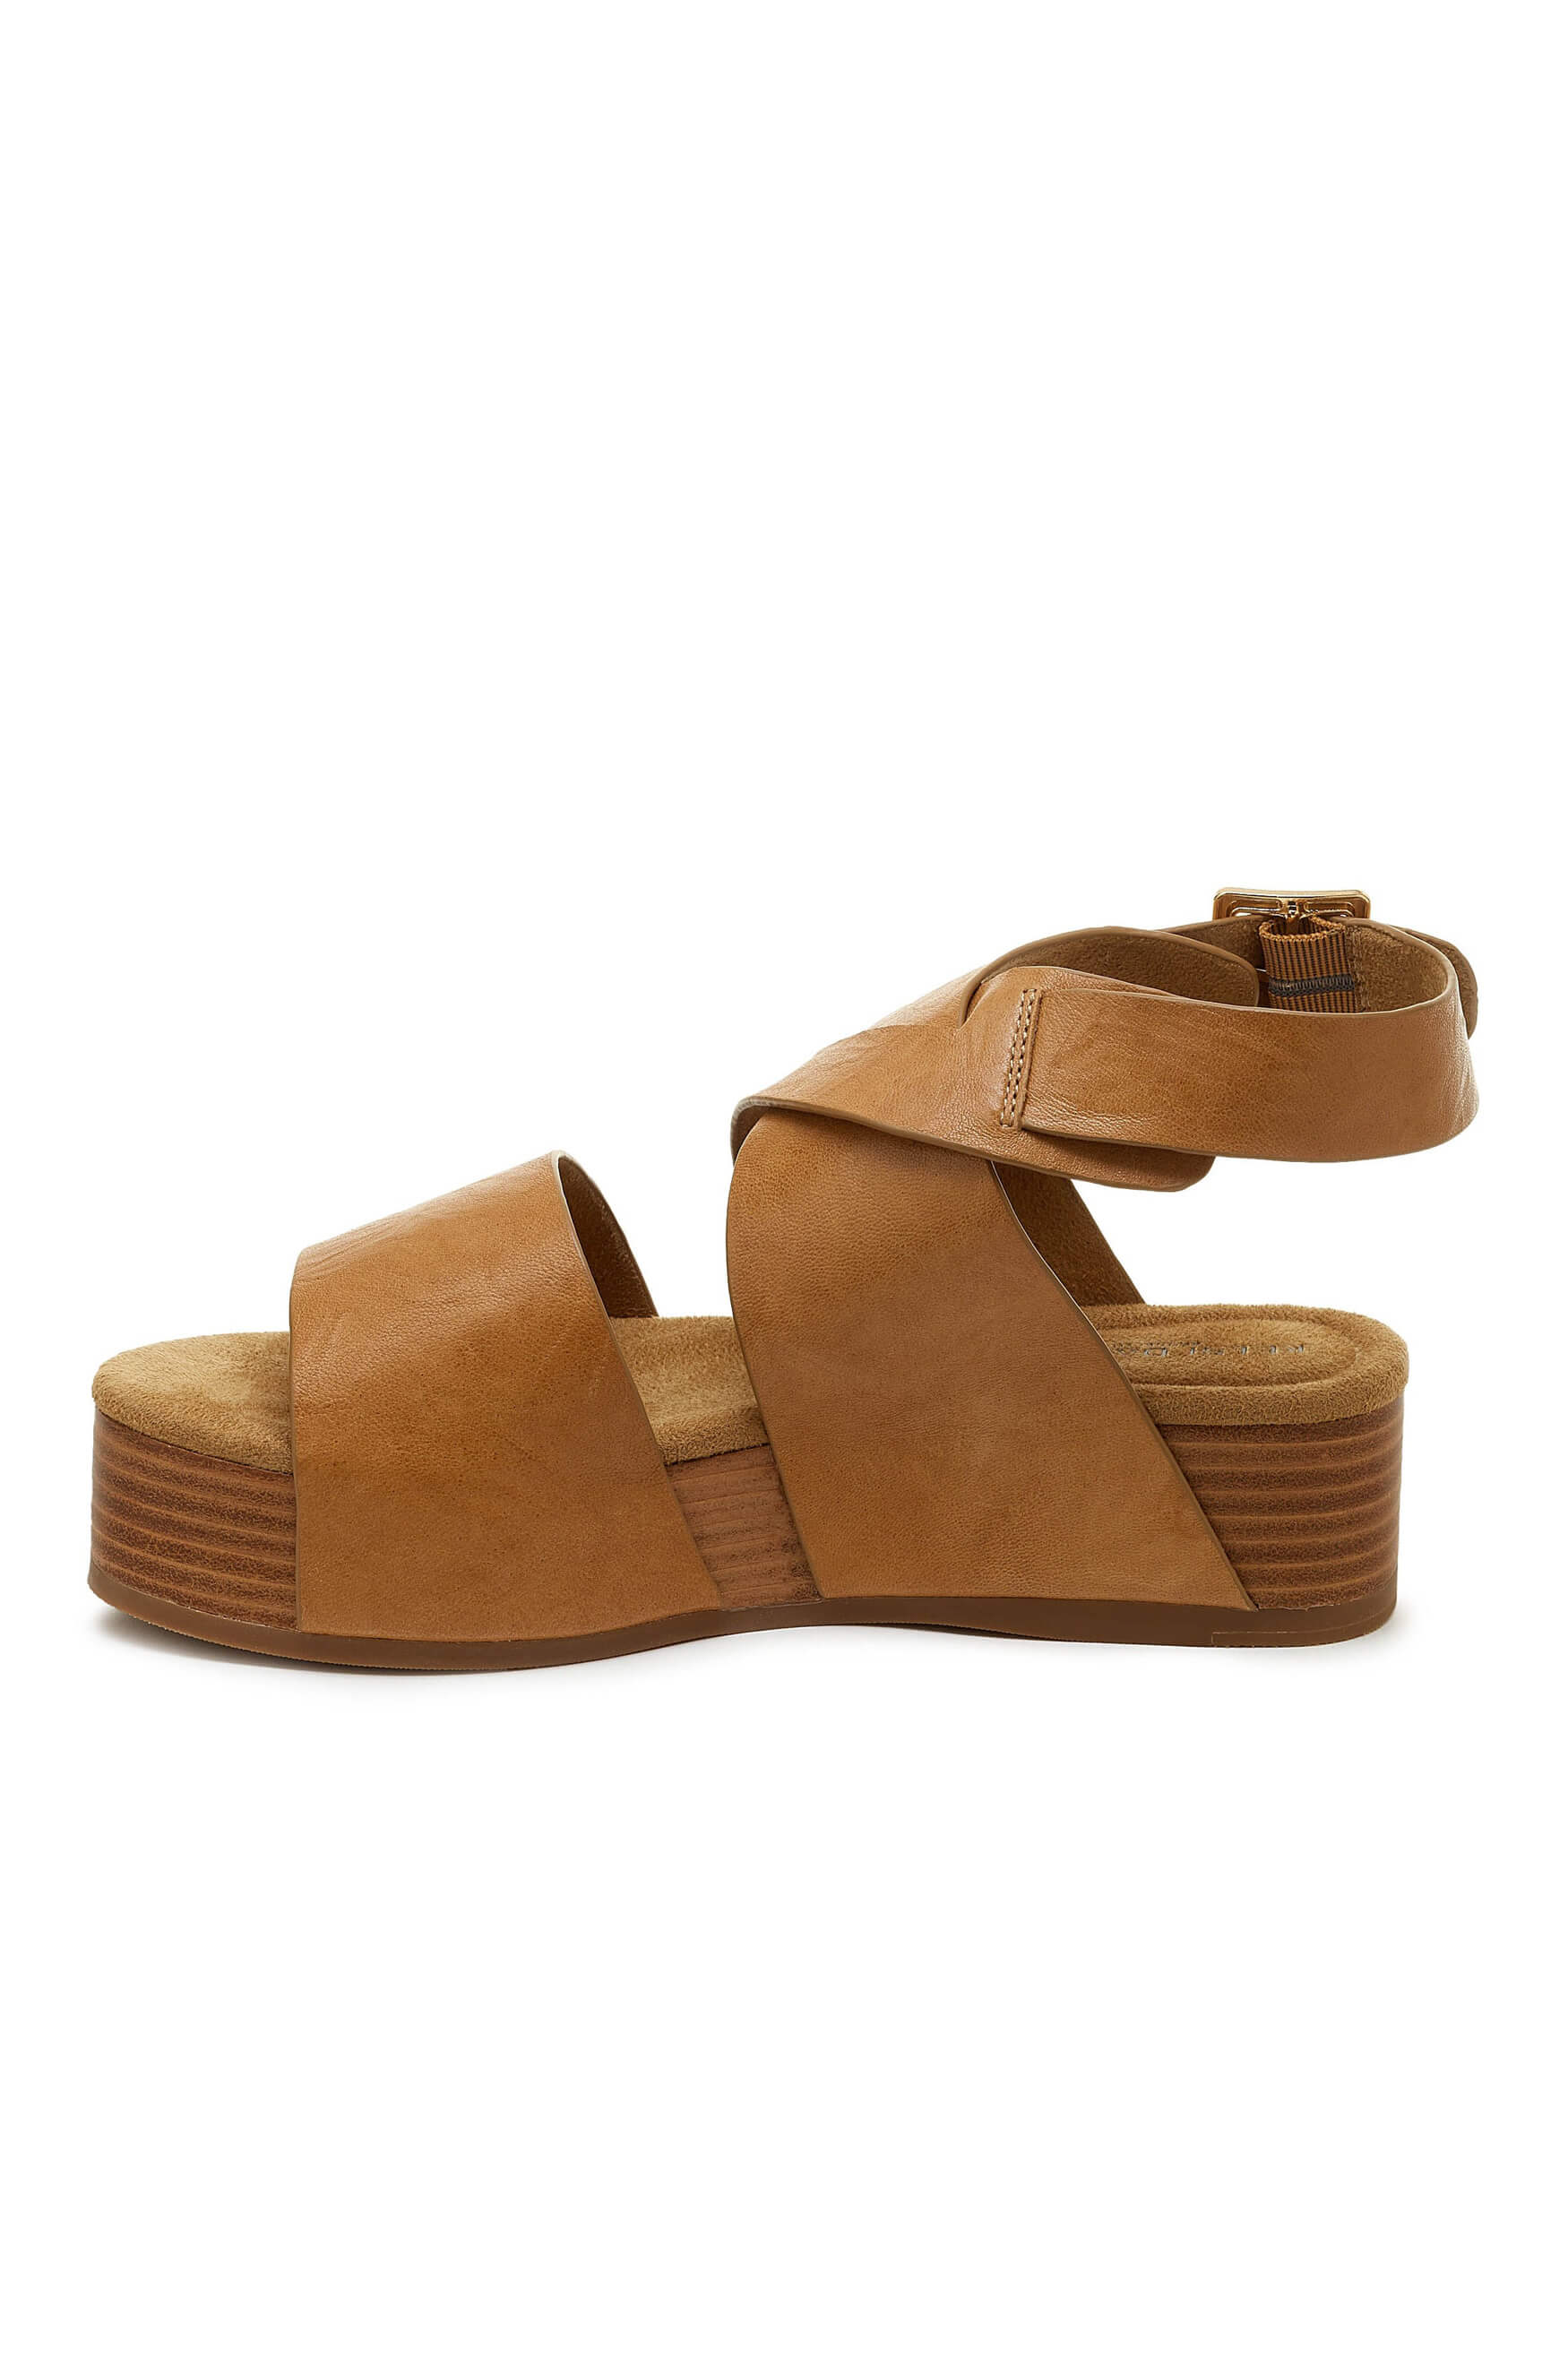 Kelsi Dagger Dunes ankle platform sandal in tan